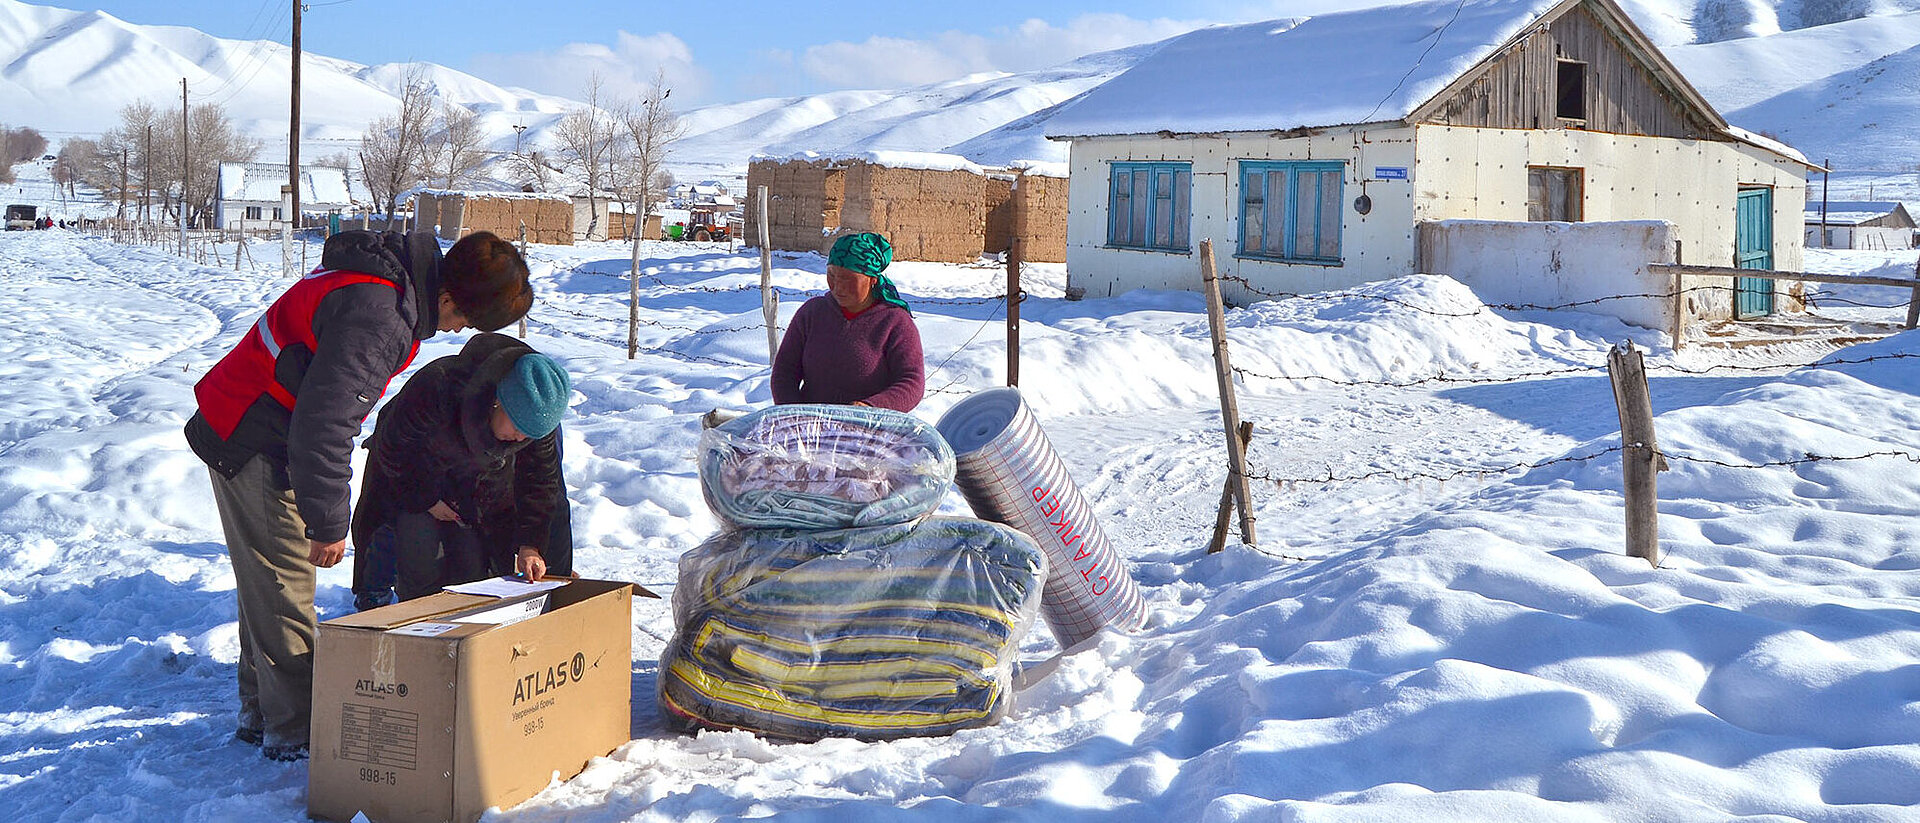 Drei Menschen mit Hilfsgütern im Schnee